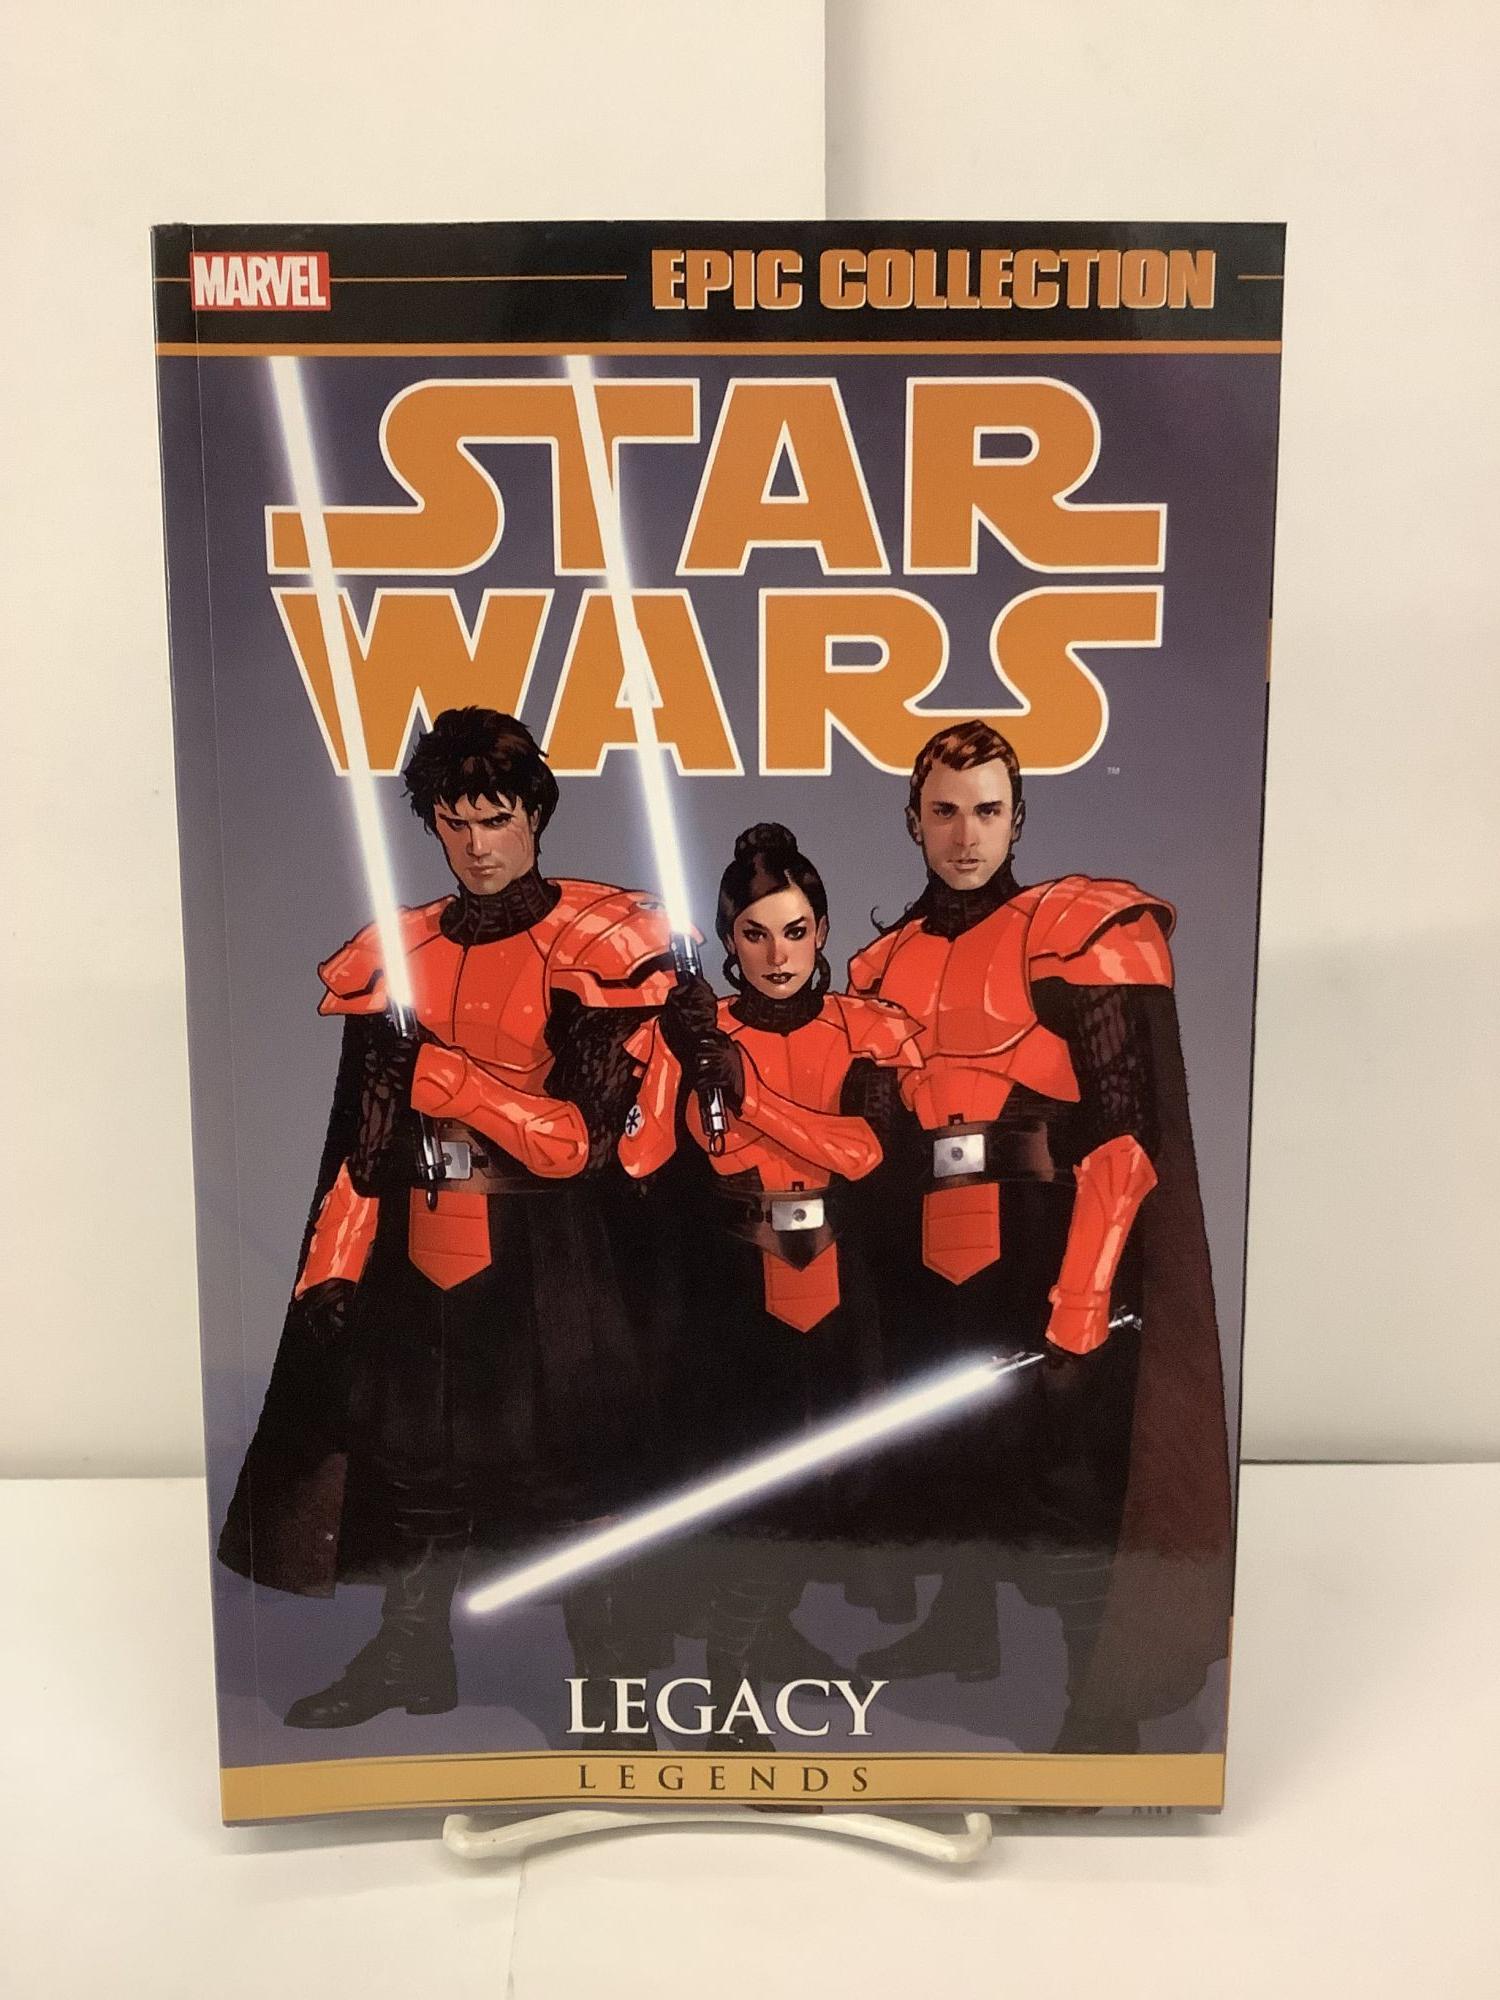 Star Wars Legends, The Epic Collection: Legacy, Volume 1 - Ostrander, John; Duursema, Jan